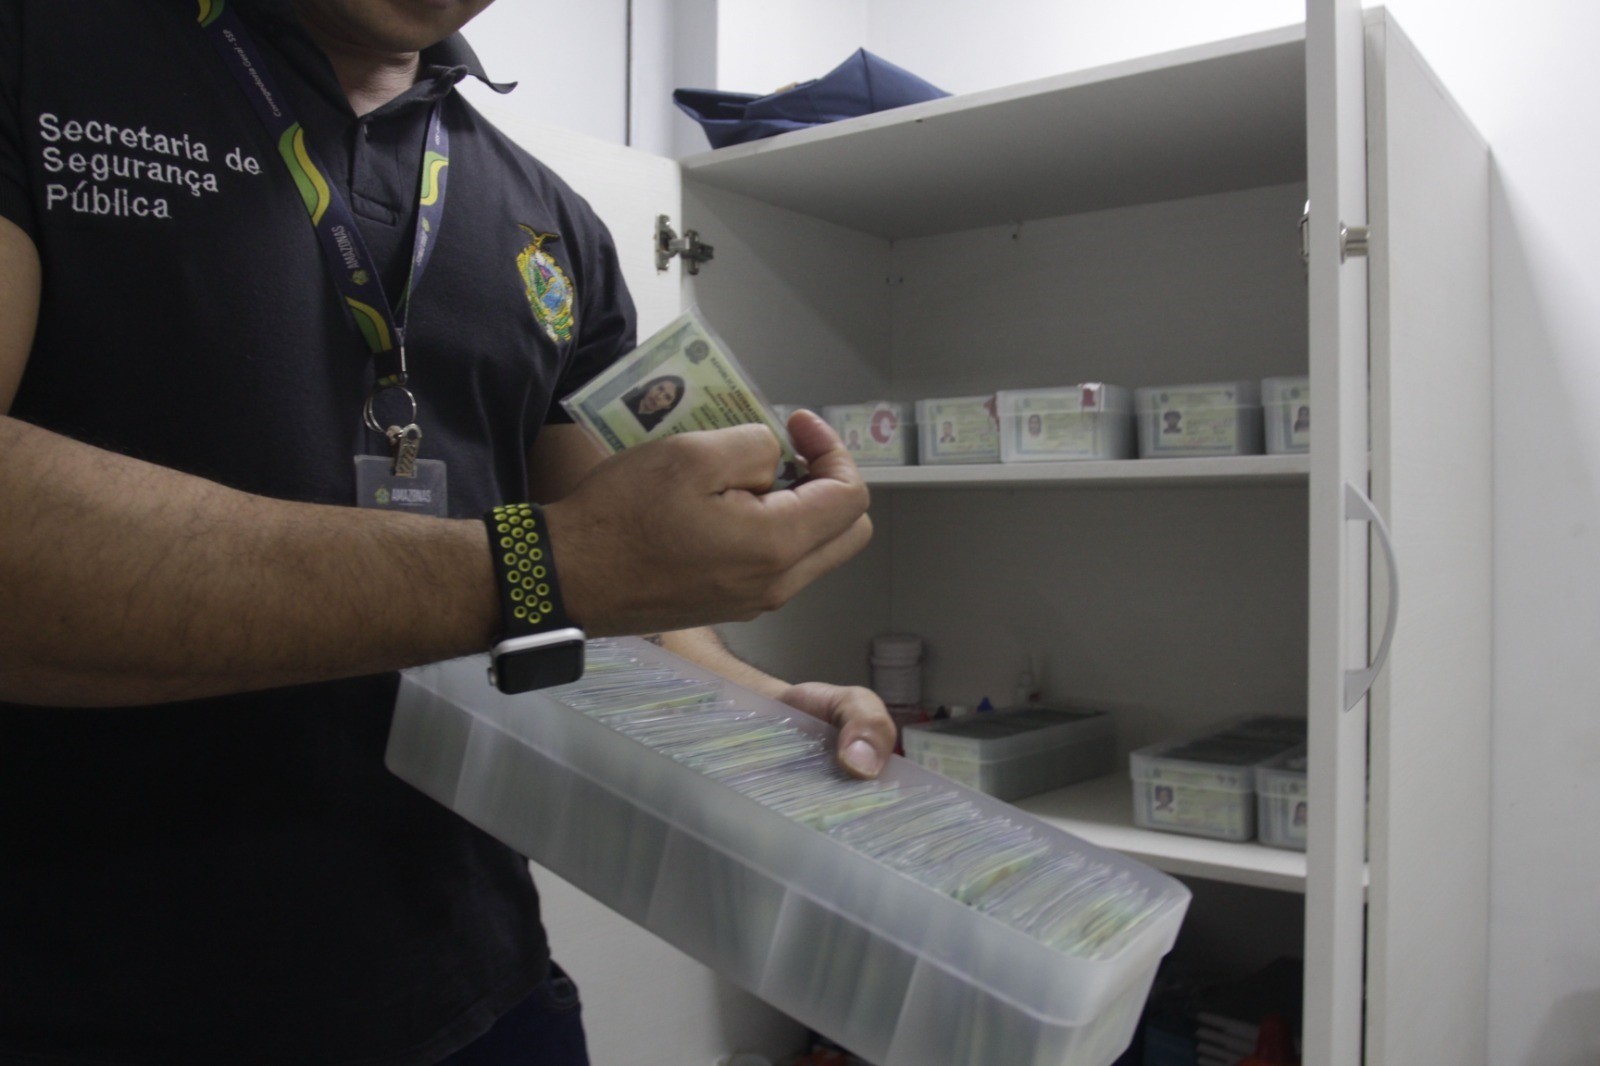 Mutirão entrega mais de 300 Carteiras de Identidade Nacional em quatro horas, em Manaus